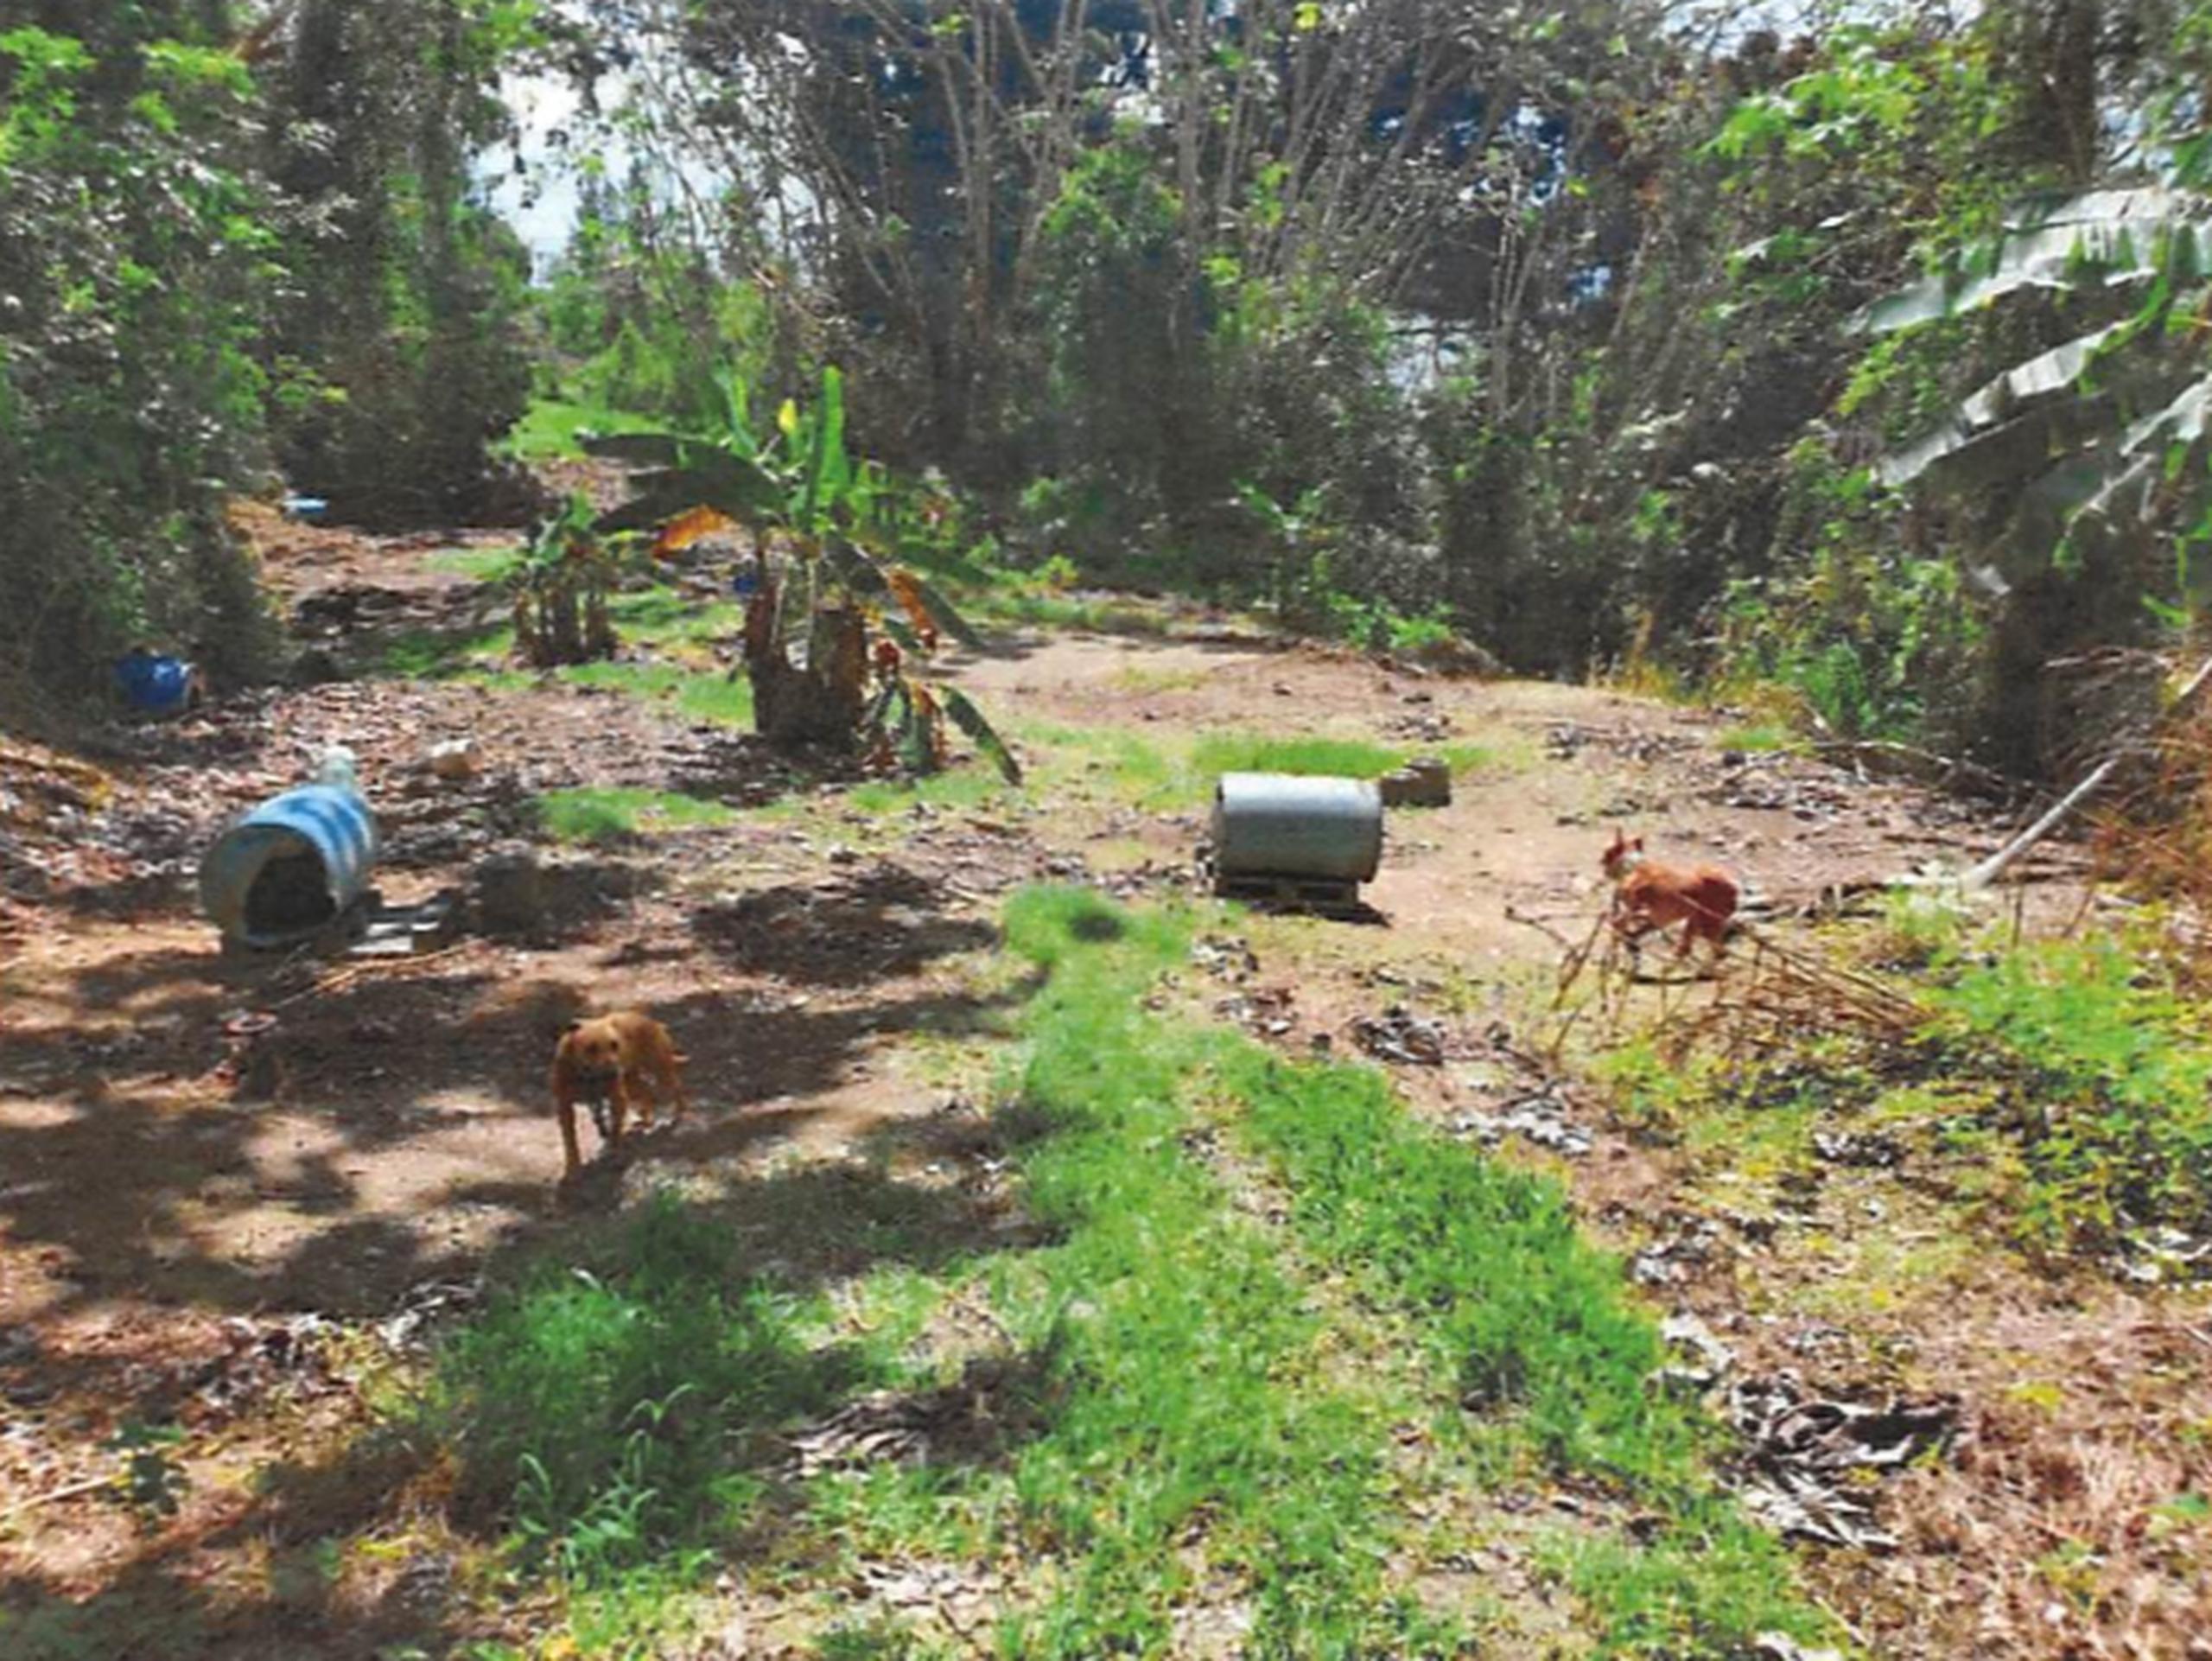 Fotos suministradas por la Fiscalía federal en la acusación contra Antonio Casillas Montero, en la que se muestran perros encontrados en una propiedad vinculada al imputado en Humacao el 6 de octubre de 2022.